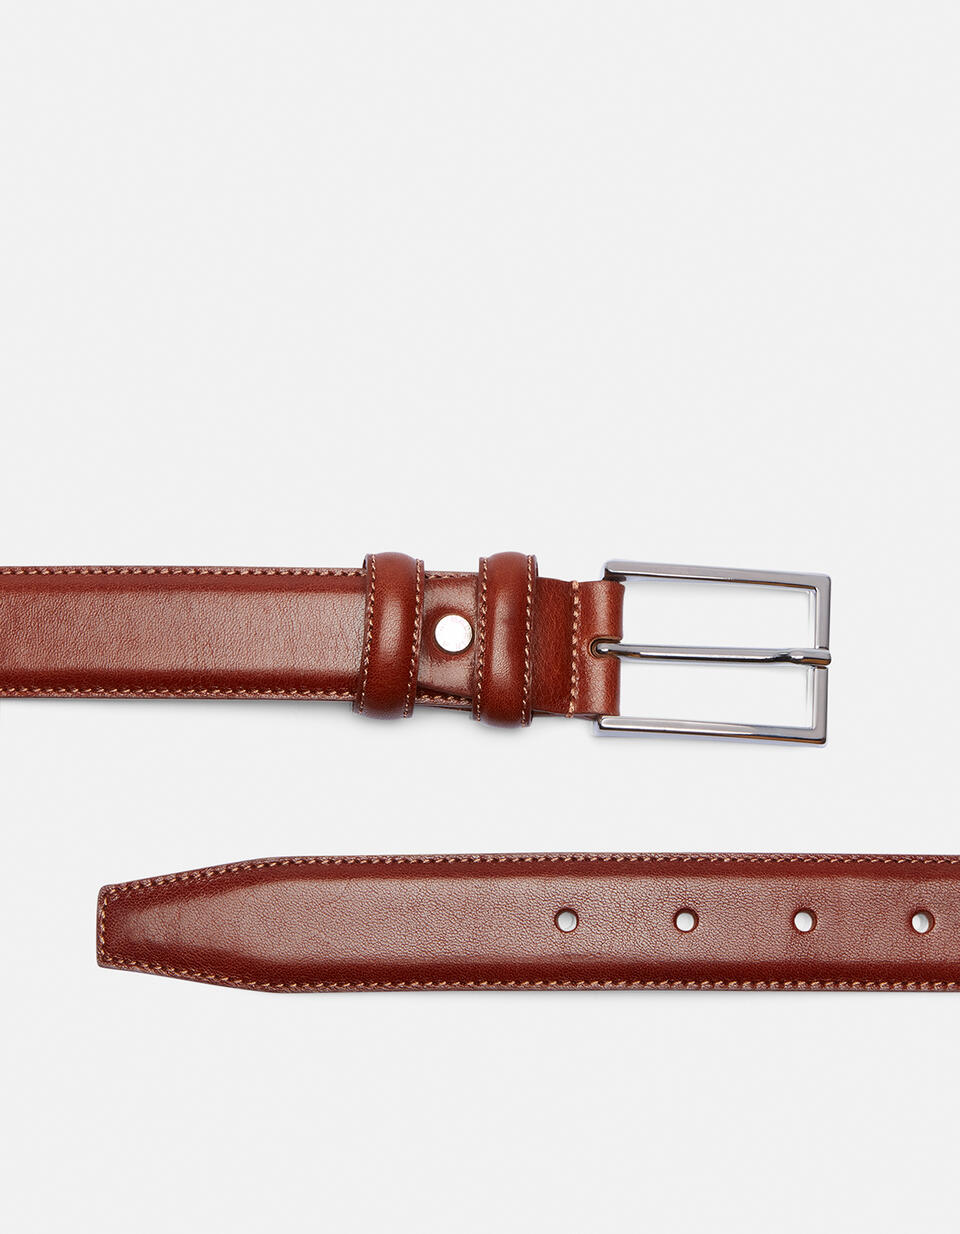 Cintura Elegante in Pelle 3cm  - Cinture Uomo - Cinture - Cuoieria Fiorentina